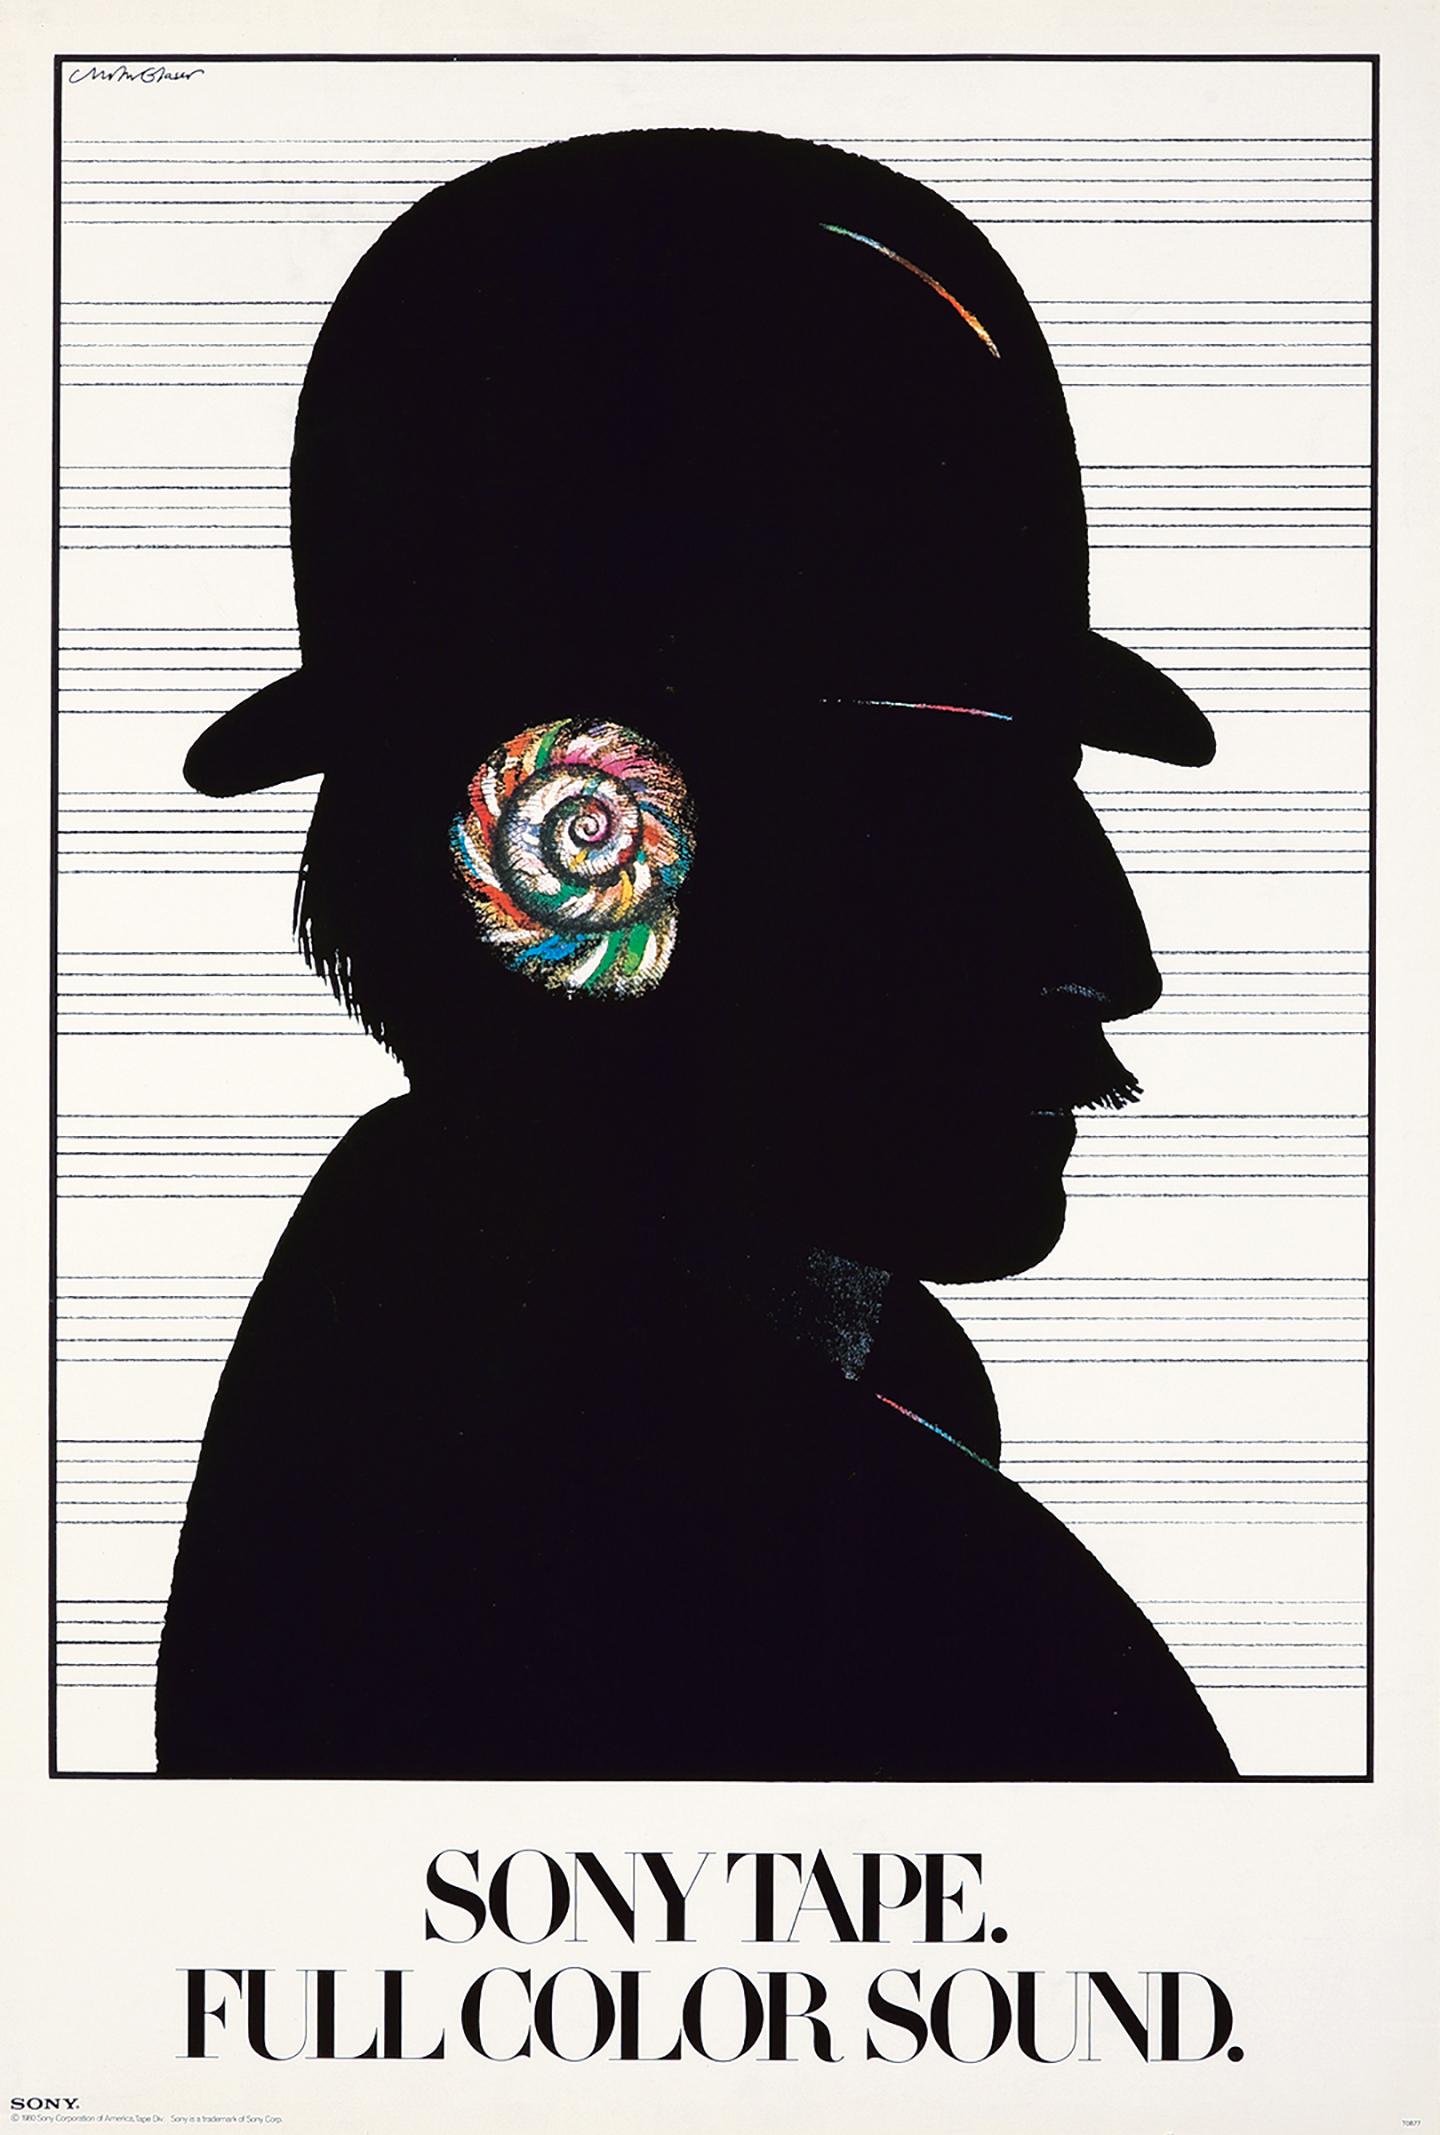 Milton Glaser Sony Tape, Full Color Sound Poster 1980:
Vintage Originalplakat von Milton Glaser aus den 1980er Jahren, entworfen von Glaser für die weltbekannte Marke Sony. Ein klassisches Werbedesign von Milton Glaser, das das Profil eines